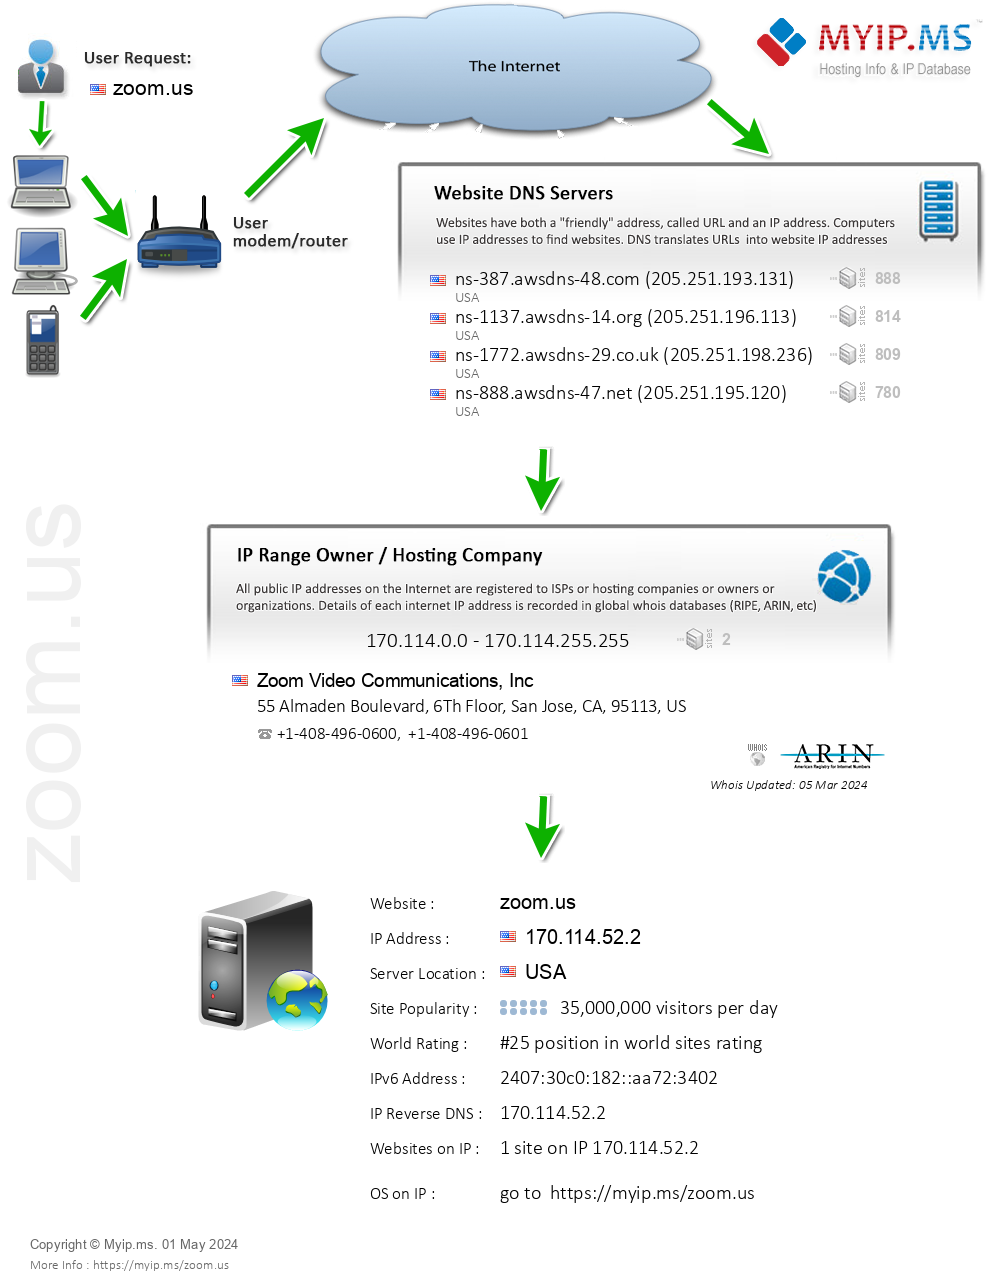 Zoom.us - Website Hosting Visual IP Diagram